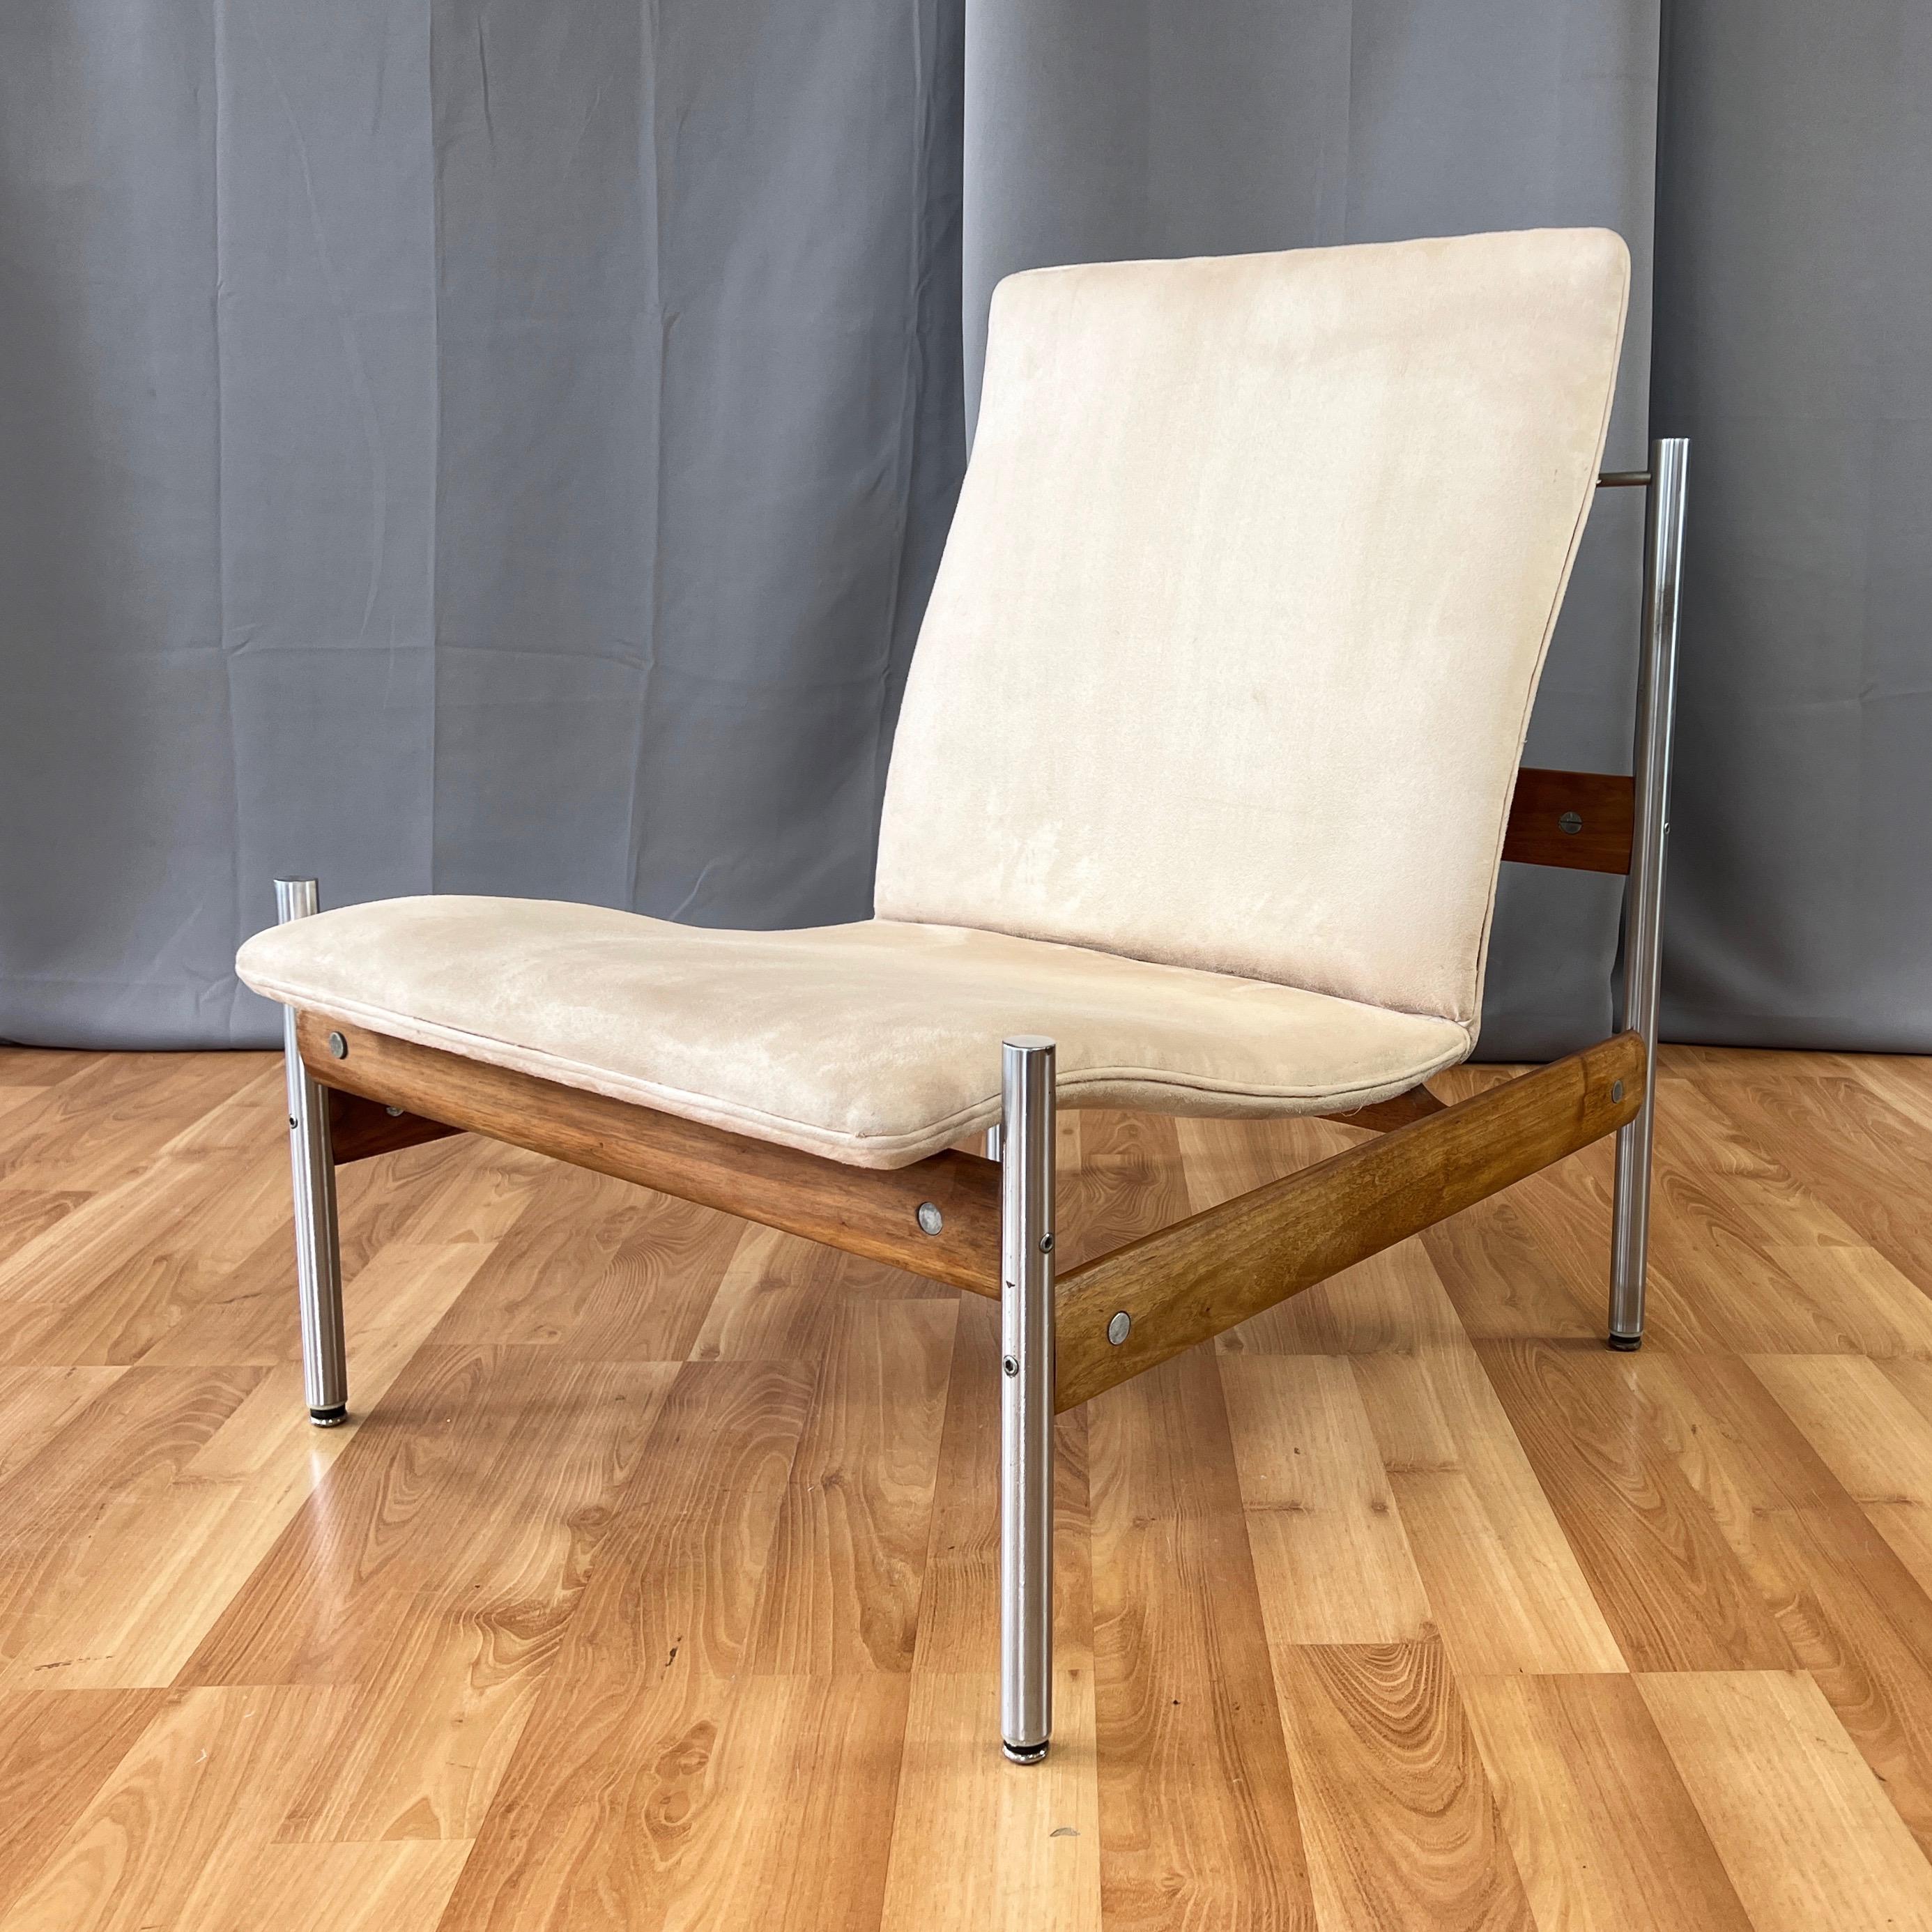 Rare version sans accoudoirs en teck et nickel de la chaise longue modèle 1000 AFS de Sven Ivar Dysthe pour la société norvégienne Dokka Møbler. Conçu en 1959, cet exemplaire date des années 1960 avec un rembourrage en ultrasuede datant des années